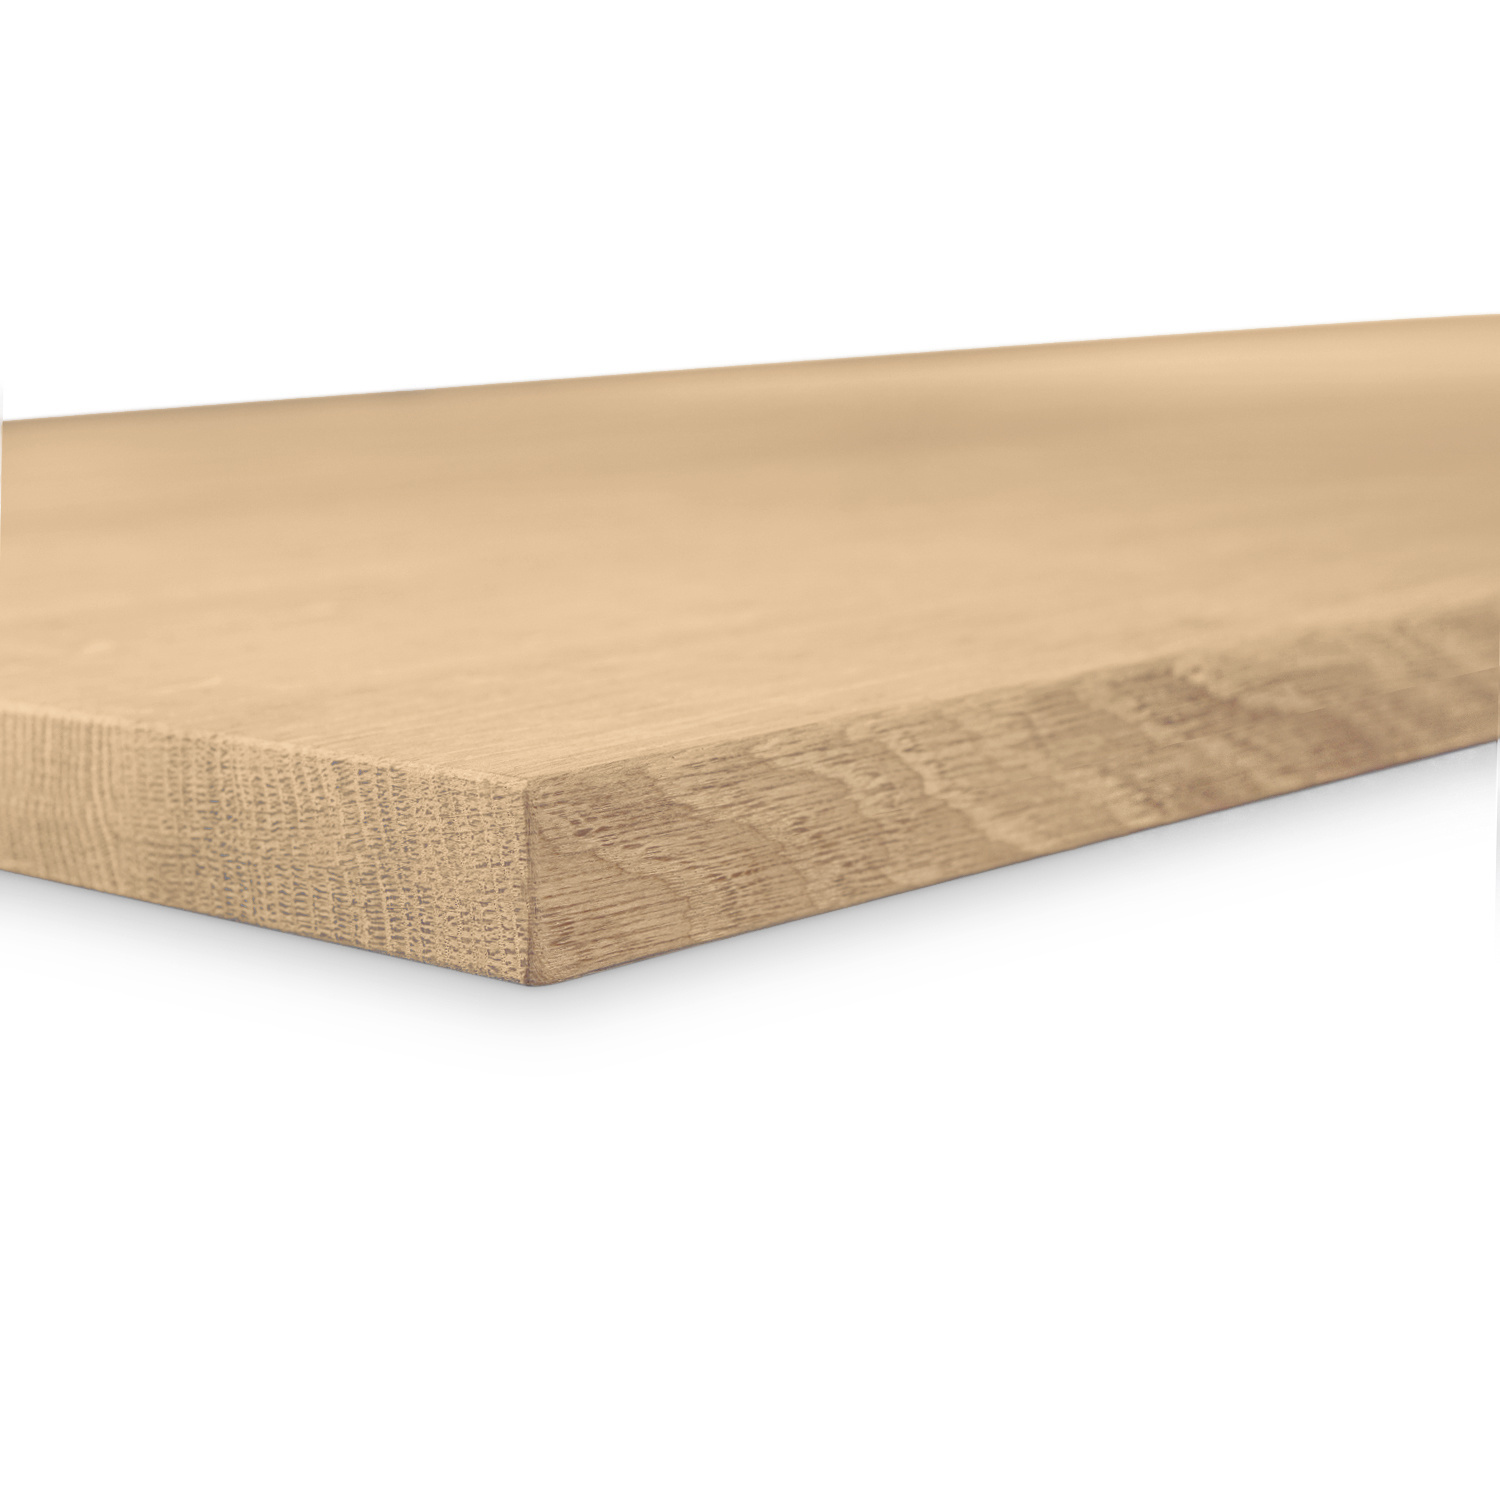  Tischplatte Eiche nach Maß - 2,7 cm dick (1-Schicht) - Breite Lamellen (10 - 12 cm breit) - Eichenholz A-Qualität - verleimt & künstlich getrocknet (HF 8-12%) - 50-120x50-248 cm